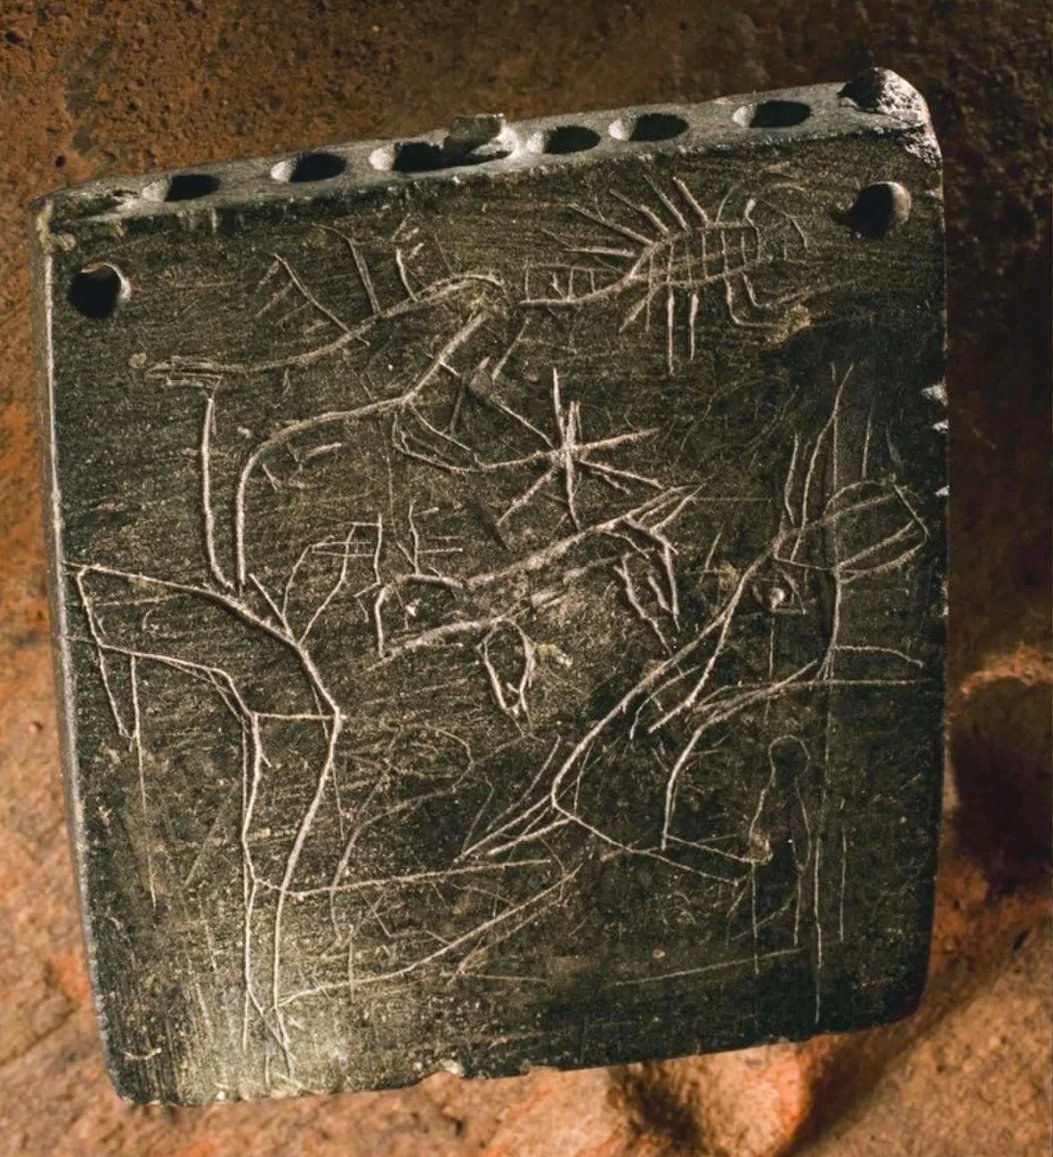 प्राचीन मंत्र में आगे और पीछे बिच्छू जैसे जानवरों के चित्र थे (यहां दिखाया गया है)। मंत्र के लेखन का विश्लेषण इंगित करता है कि यह 850 ईसा पूर्व और 800 ईसा पूर्व के बीच किसी समय अंकित किया गया था, और यह शिलालेख को अब तक का सबसे पुराना अरामी मंत्र बनाता है। © रॉबर्टो सेकासी द्वारा फोटो / शिकागो-टुबिंगन अभियान के सौजन्य से ज़िन्किर्ली